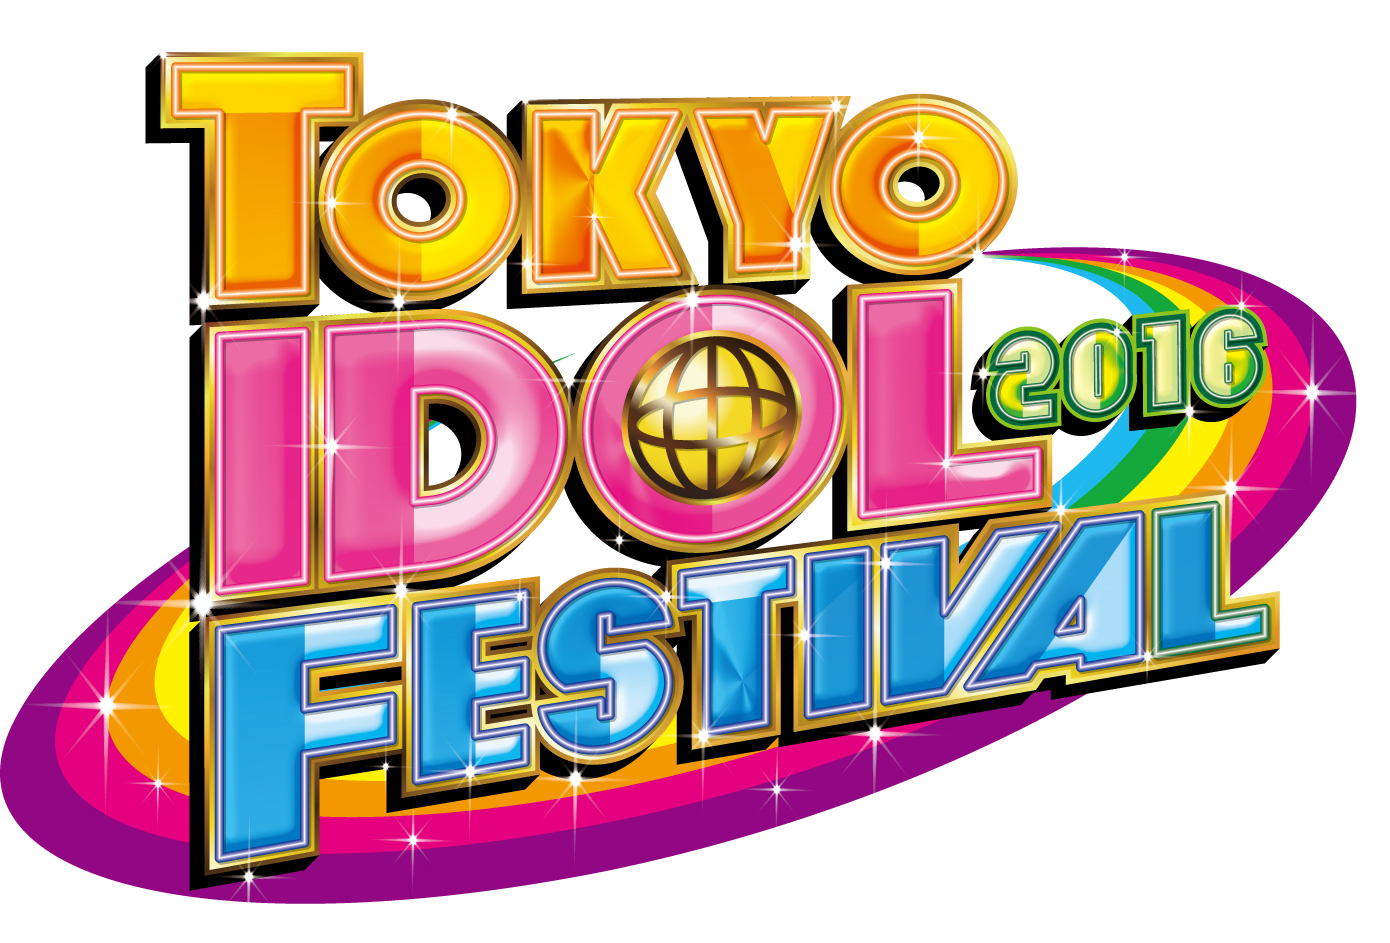 ブランジスタゲーム 神の手 第6弾企画としてアイドルイベント 東京アイドルフェスティバル16 とのコラボ企画を実施 Gamebiz